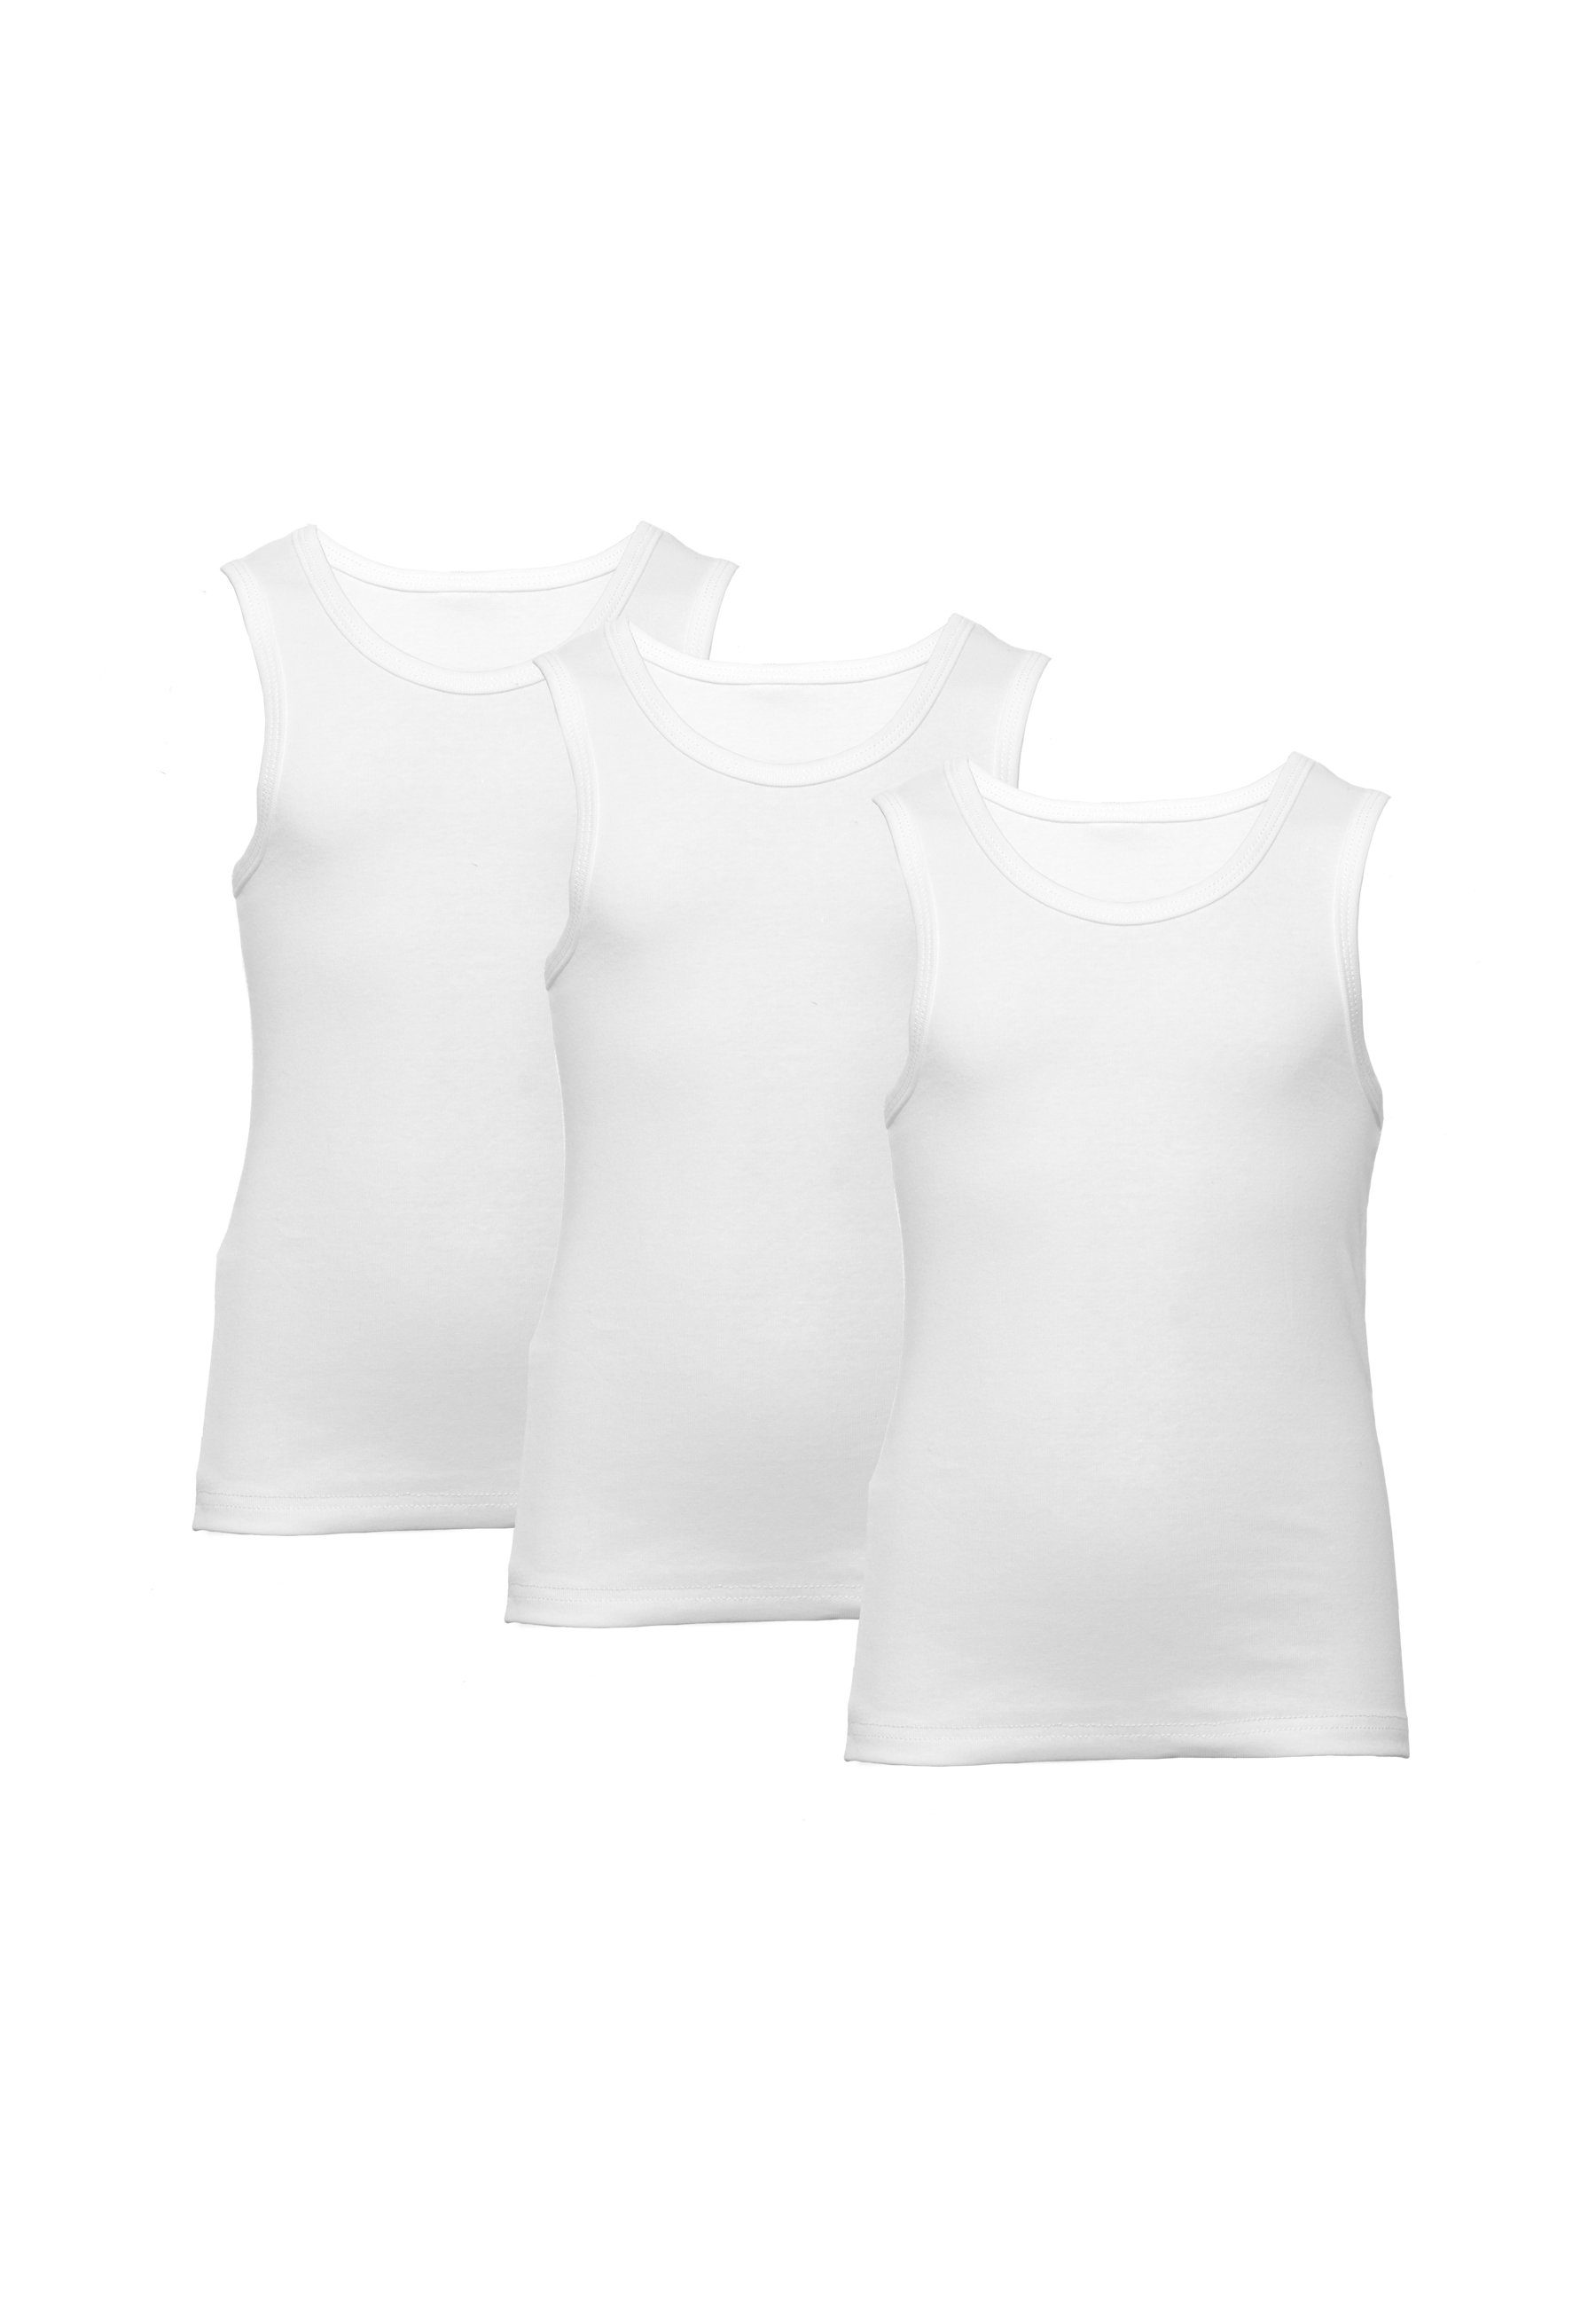 Unterhemden reiner Weiß Baumwolle Unterhemd 3er-Pack, für Jungen, CARBURANT aus